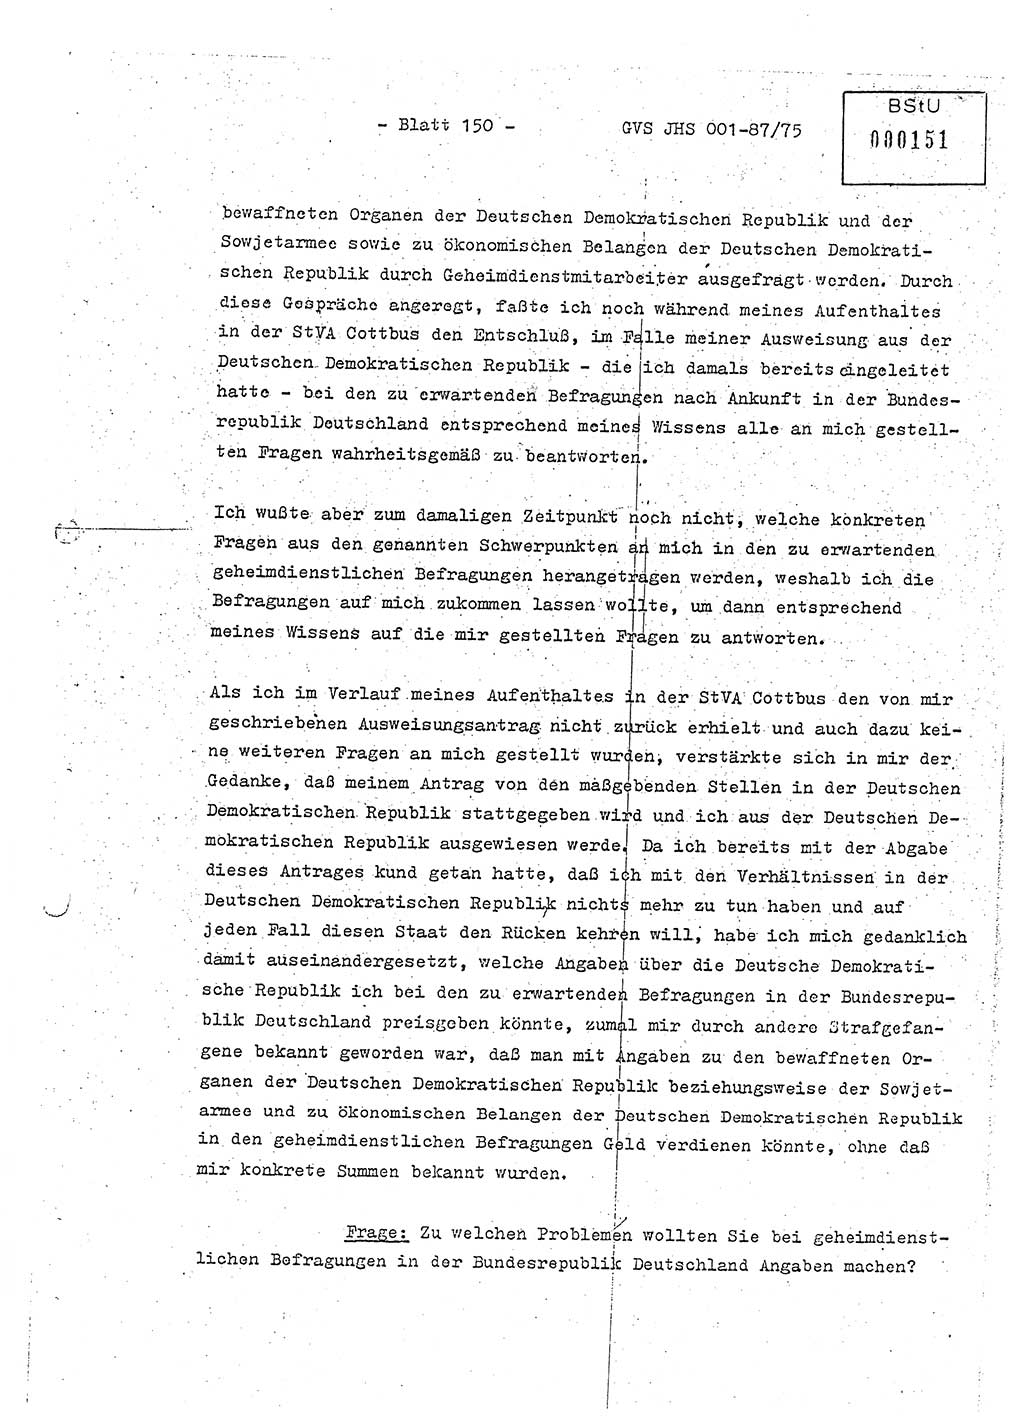 Diplomarbeit Hauptmann Volkmar Heinz (Abt. ⅩⅣ), Oberleutnant Lothar Rüdiger (BV Lpz. Abt. Ⅺ), Ministerium für Staatssicherheit (MfS) [Deutsche Demokratische Republik (DDR)], Juristische Hochschule (JHS), Geheime Verschlußsache (GVS) o001-87/75, Potsdam 1975, Seite 150 (Dipl.-Arb. MfS DDR JHS GVS o001-87/75 1975, S. 150)